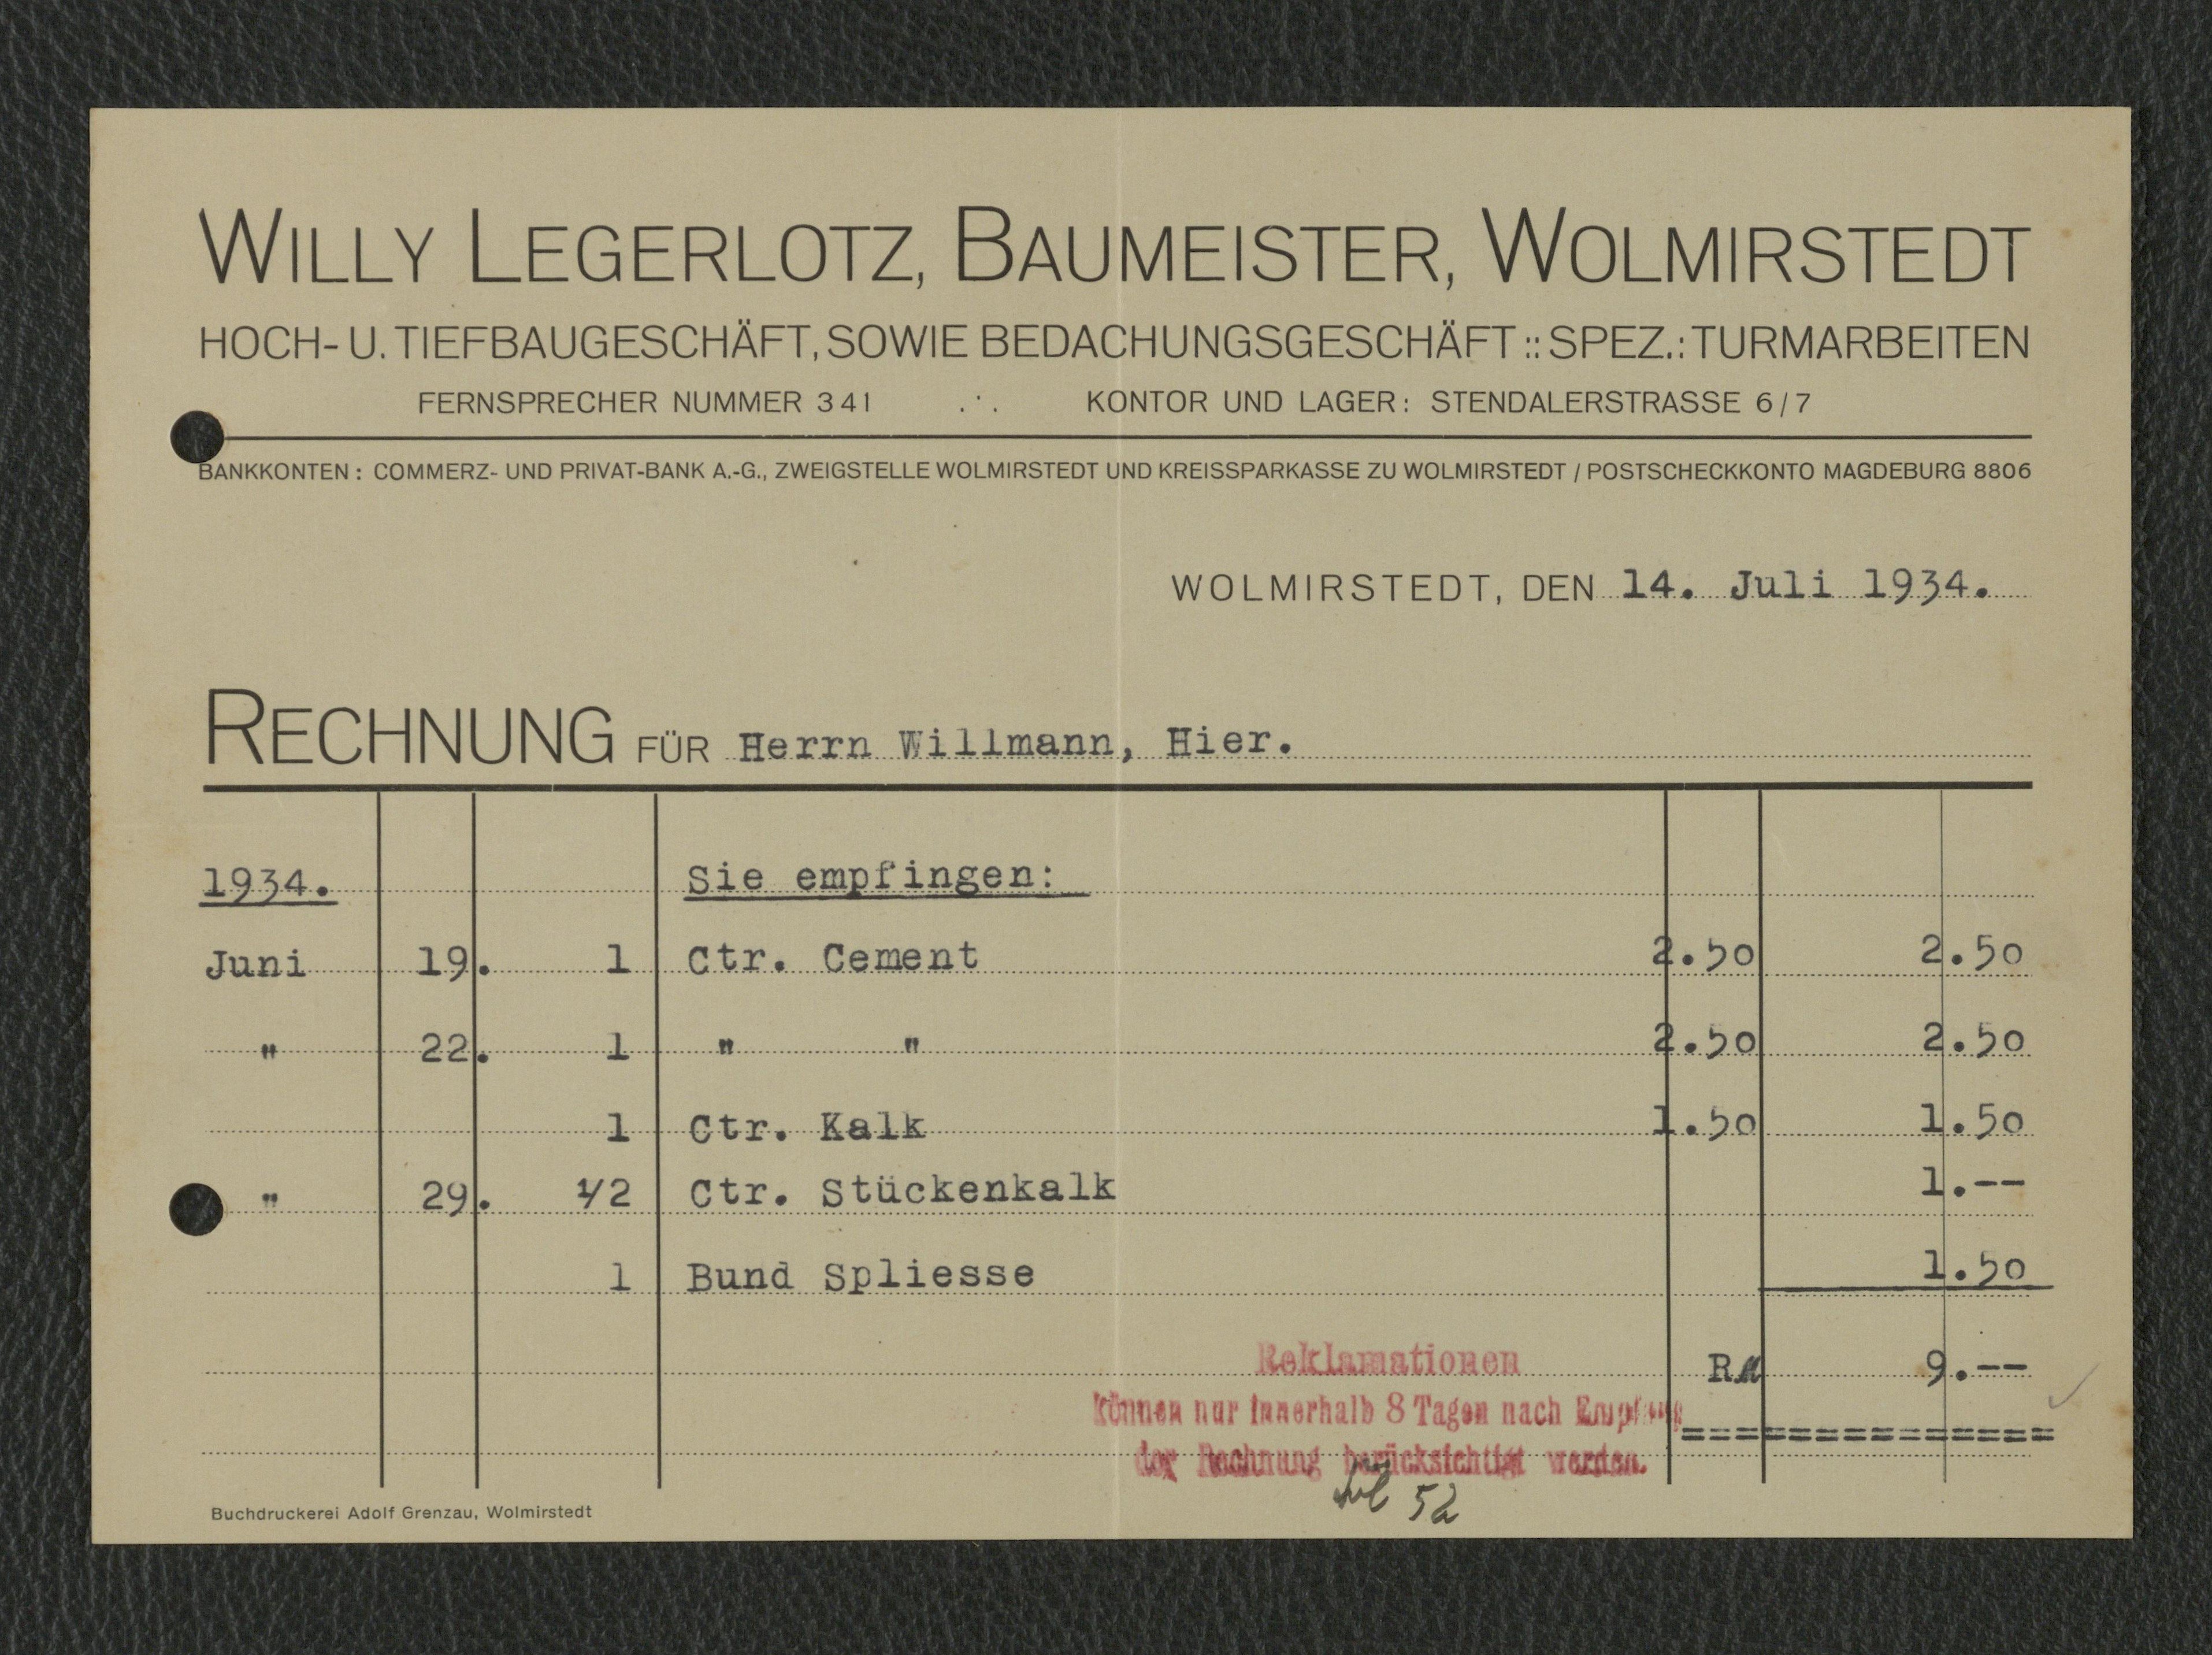 Rechnung Baumeister (Hoch- und Tiefbau) Willy Legerlotz für Willmann, Wolmirstedt vom 14.07.1934 (Museum Wolmirstedt RR-F)